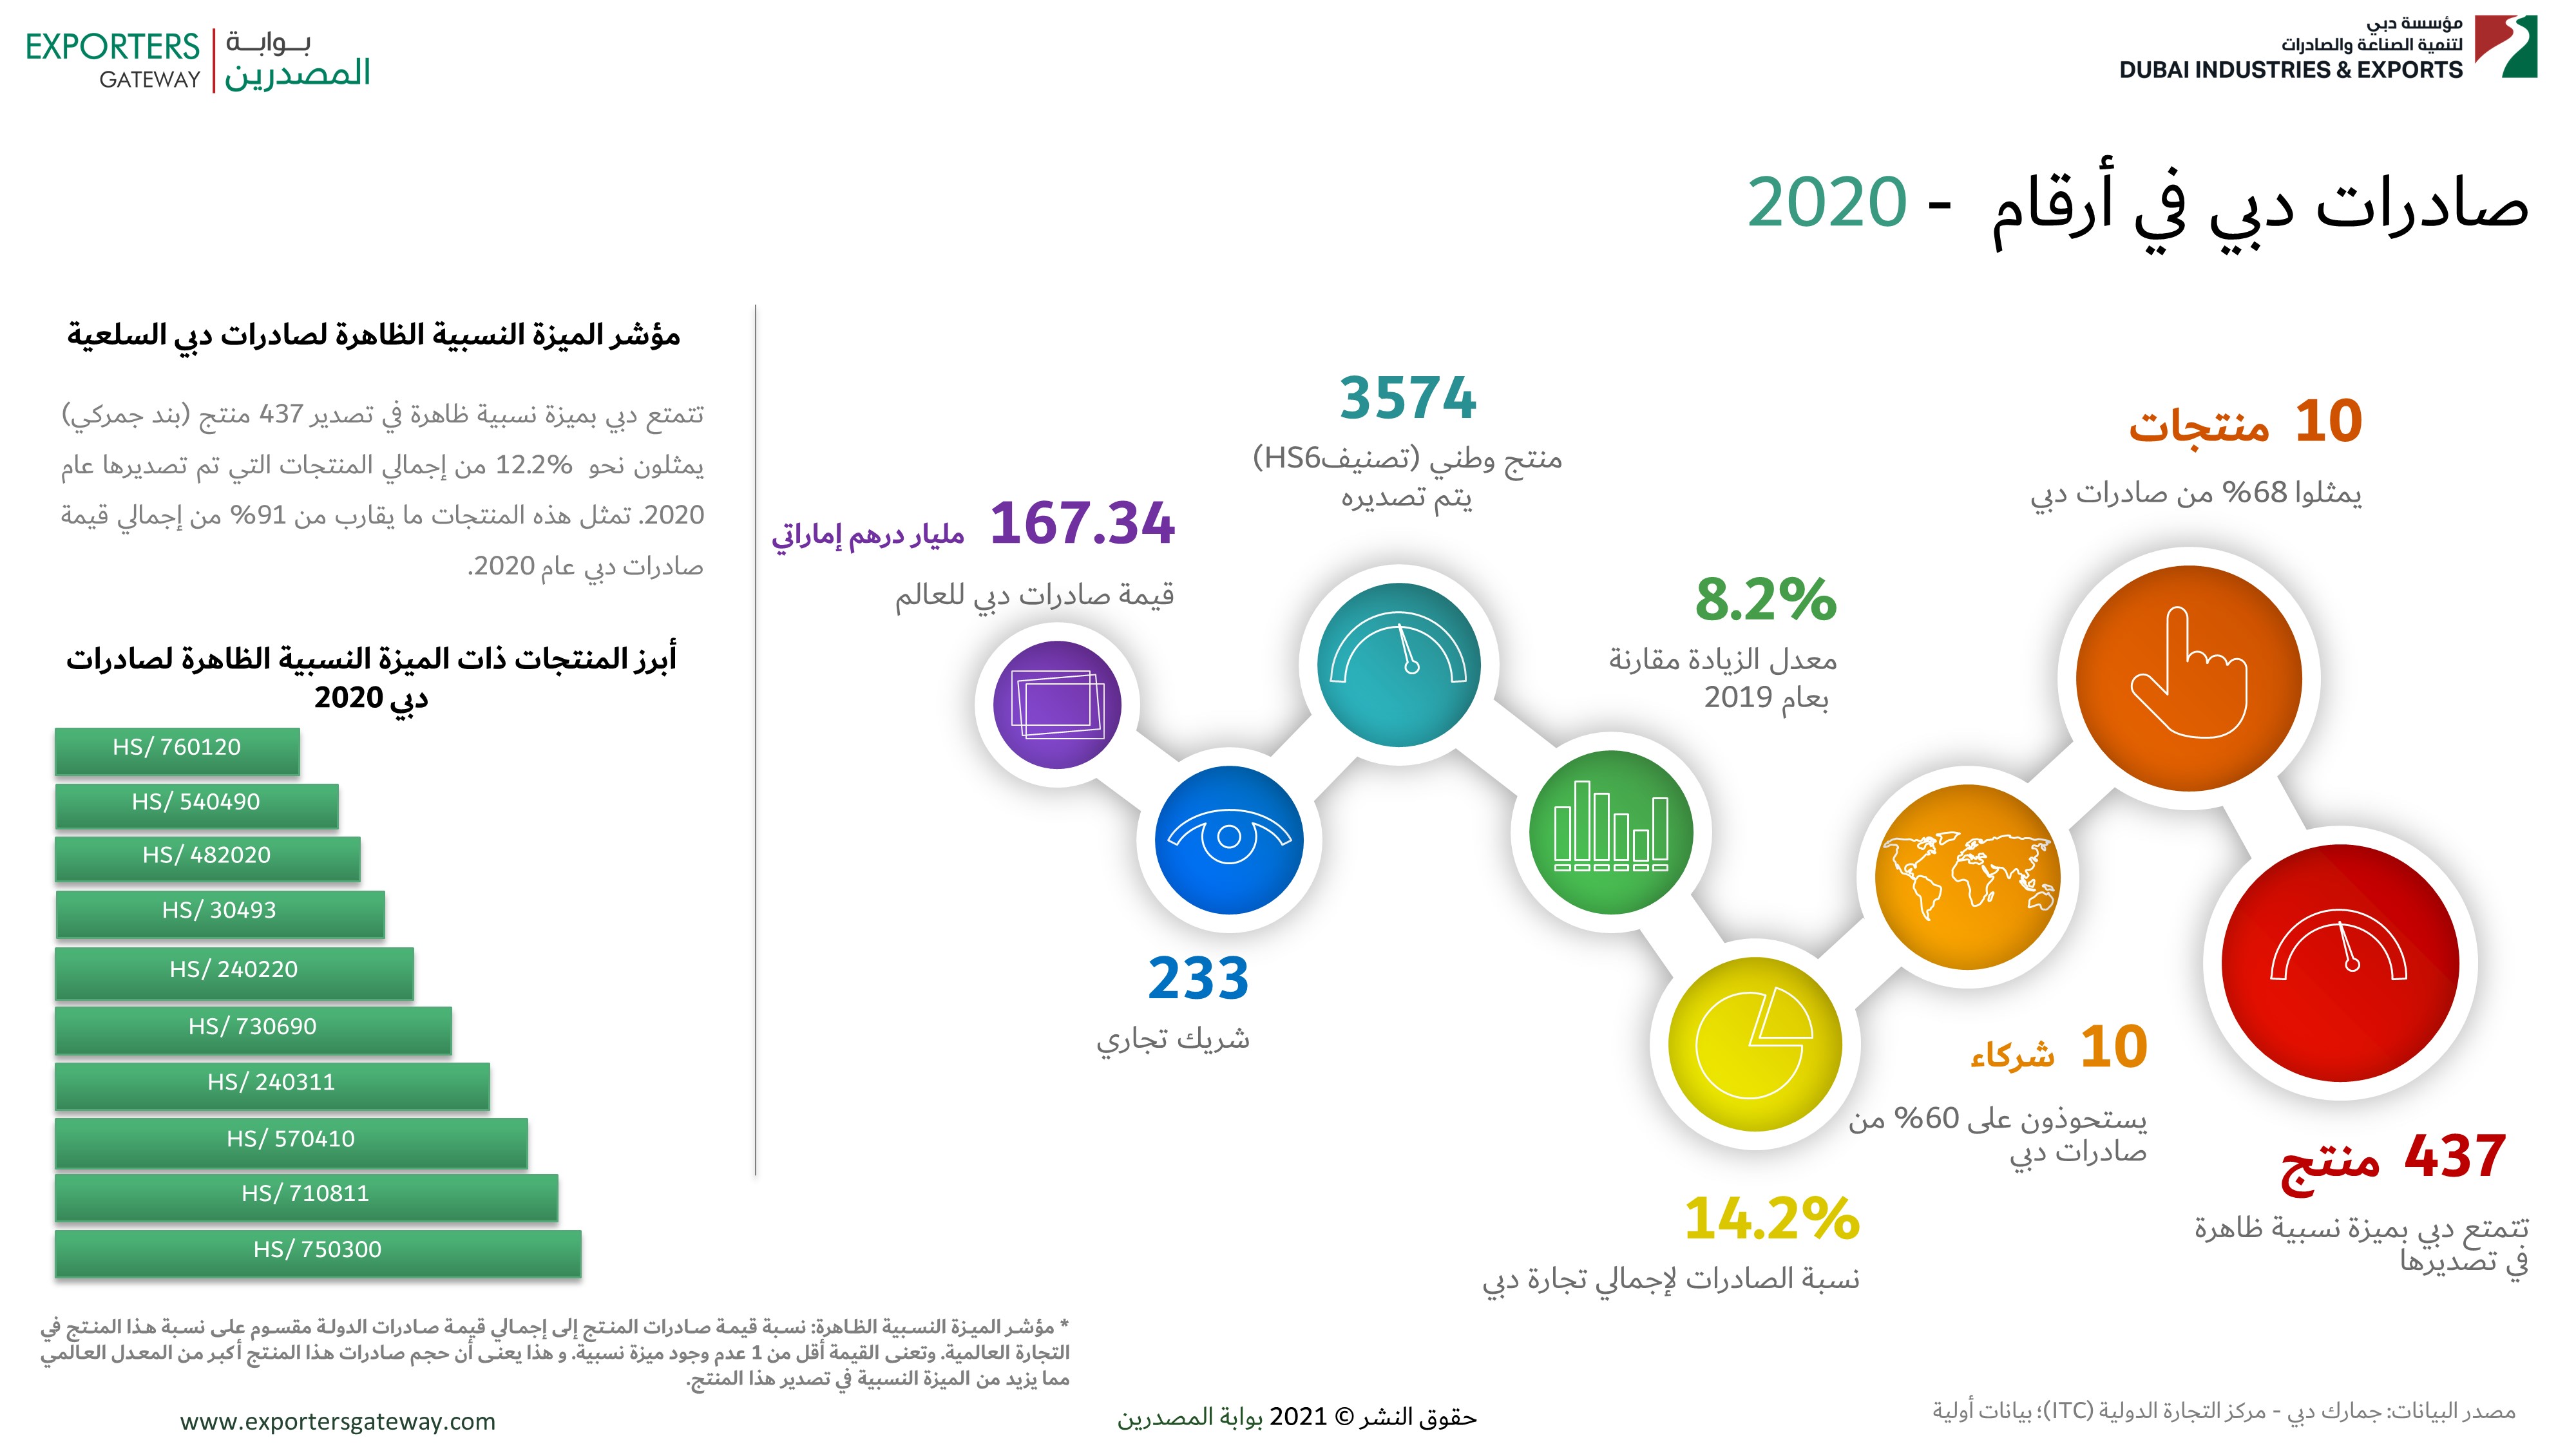 صادرات دبي في أرقام  - 2020